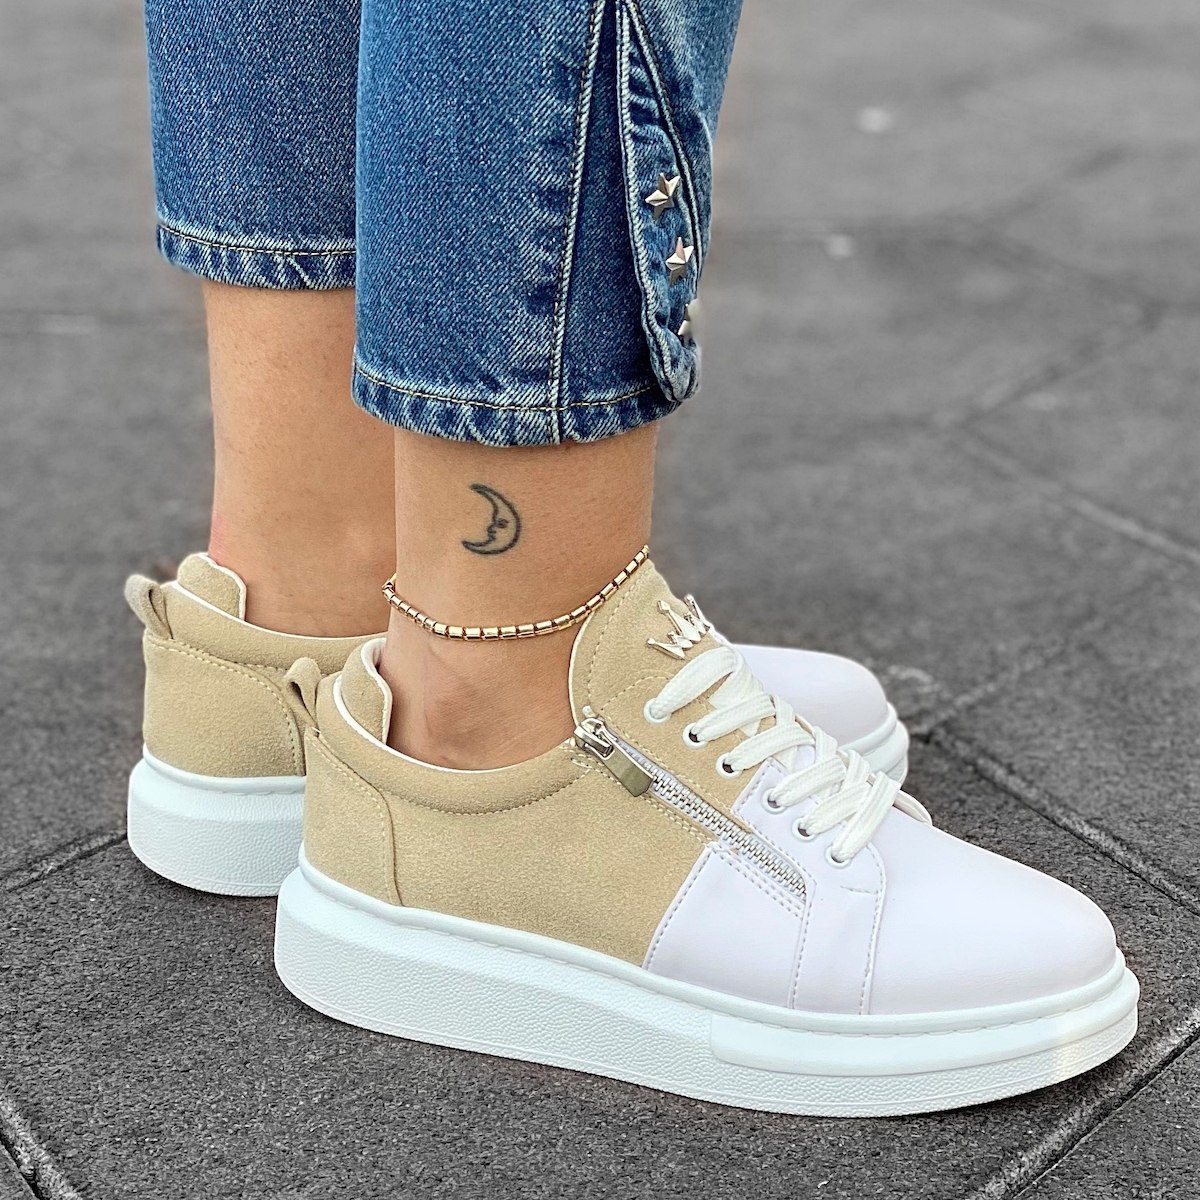 Women's Hype Sole Zipped Style Sneakers In Latte-White - 5